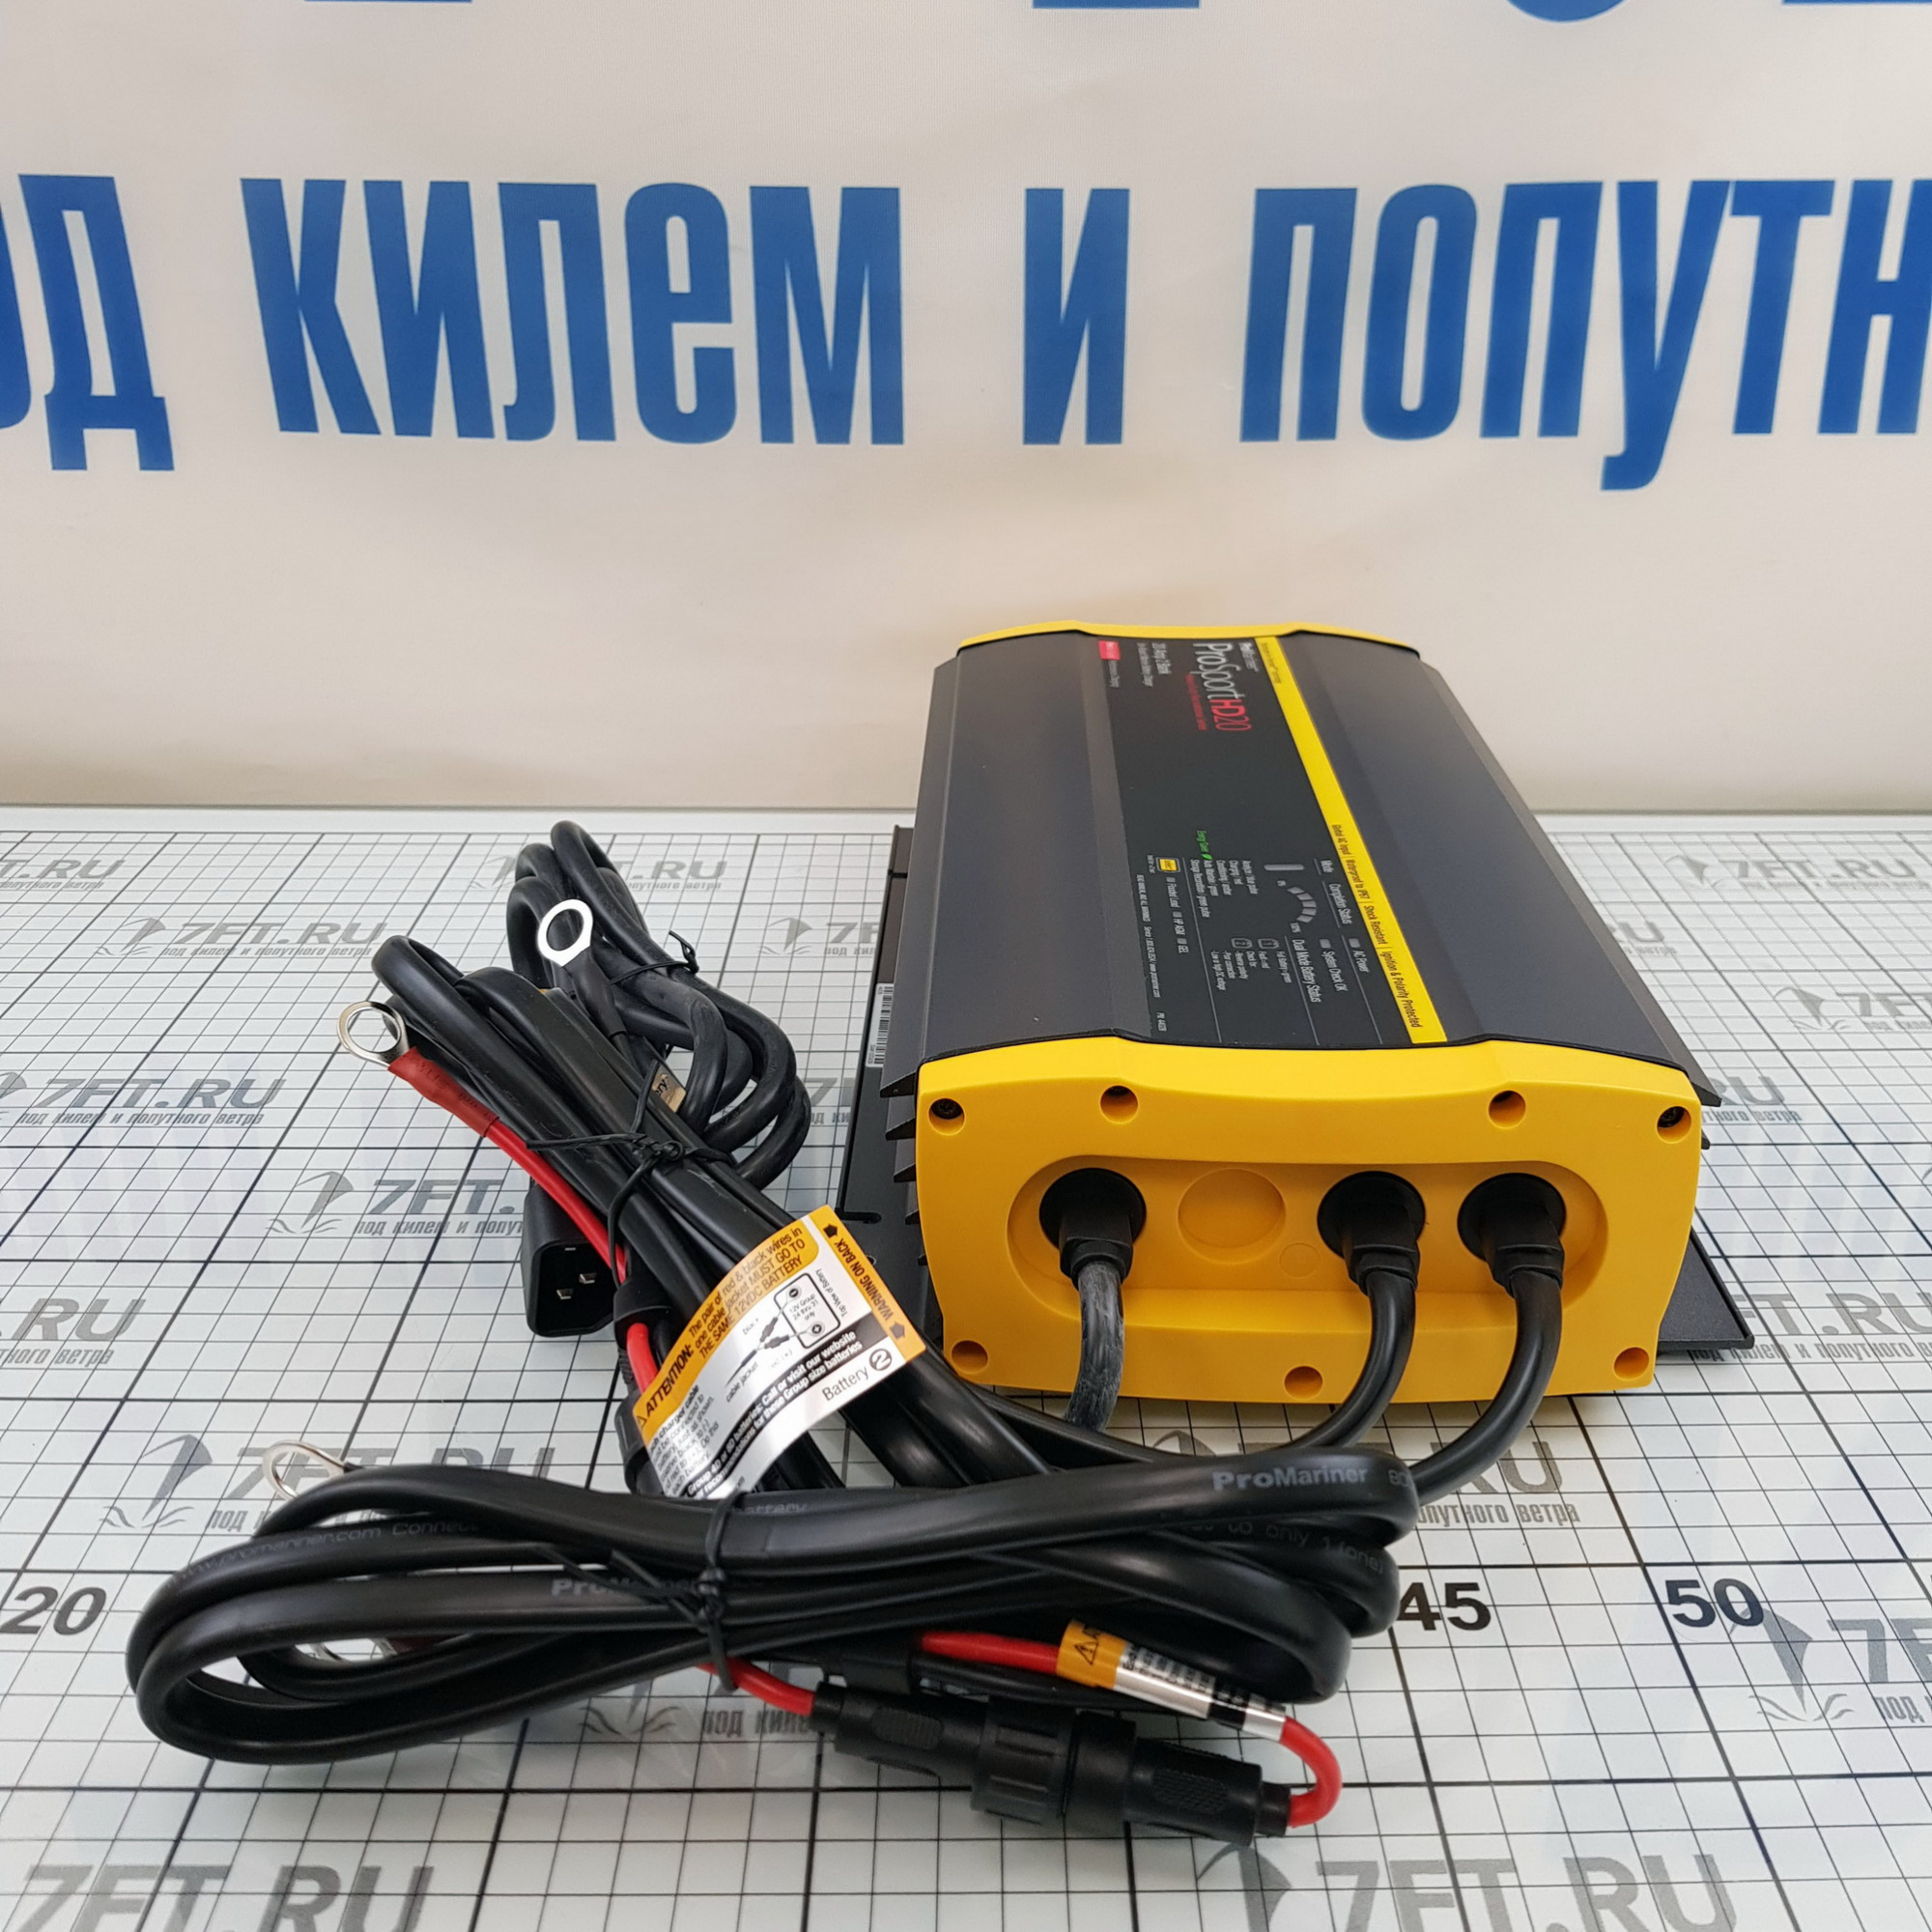 Купить Зарядное устройство ProMariner ProSportHD 20 Global 44028 12/24В 100-240В 20А IP67 на 2 АКБ 7ft.ru в интернет магазине Семь Футов